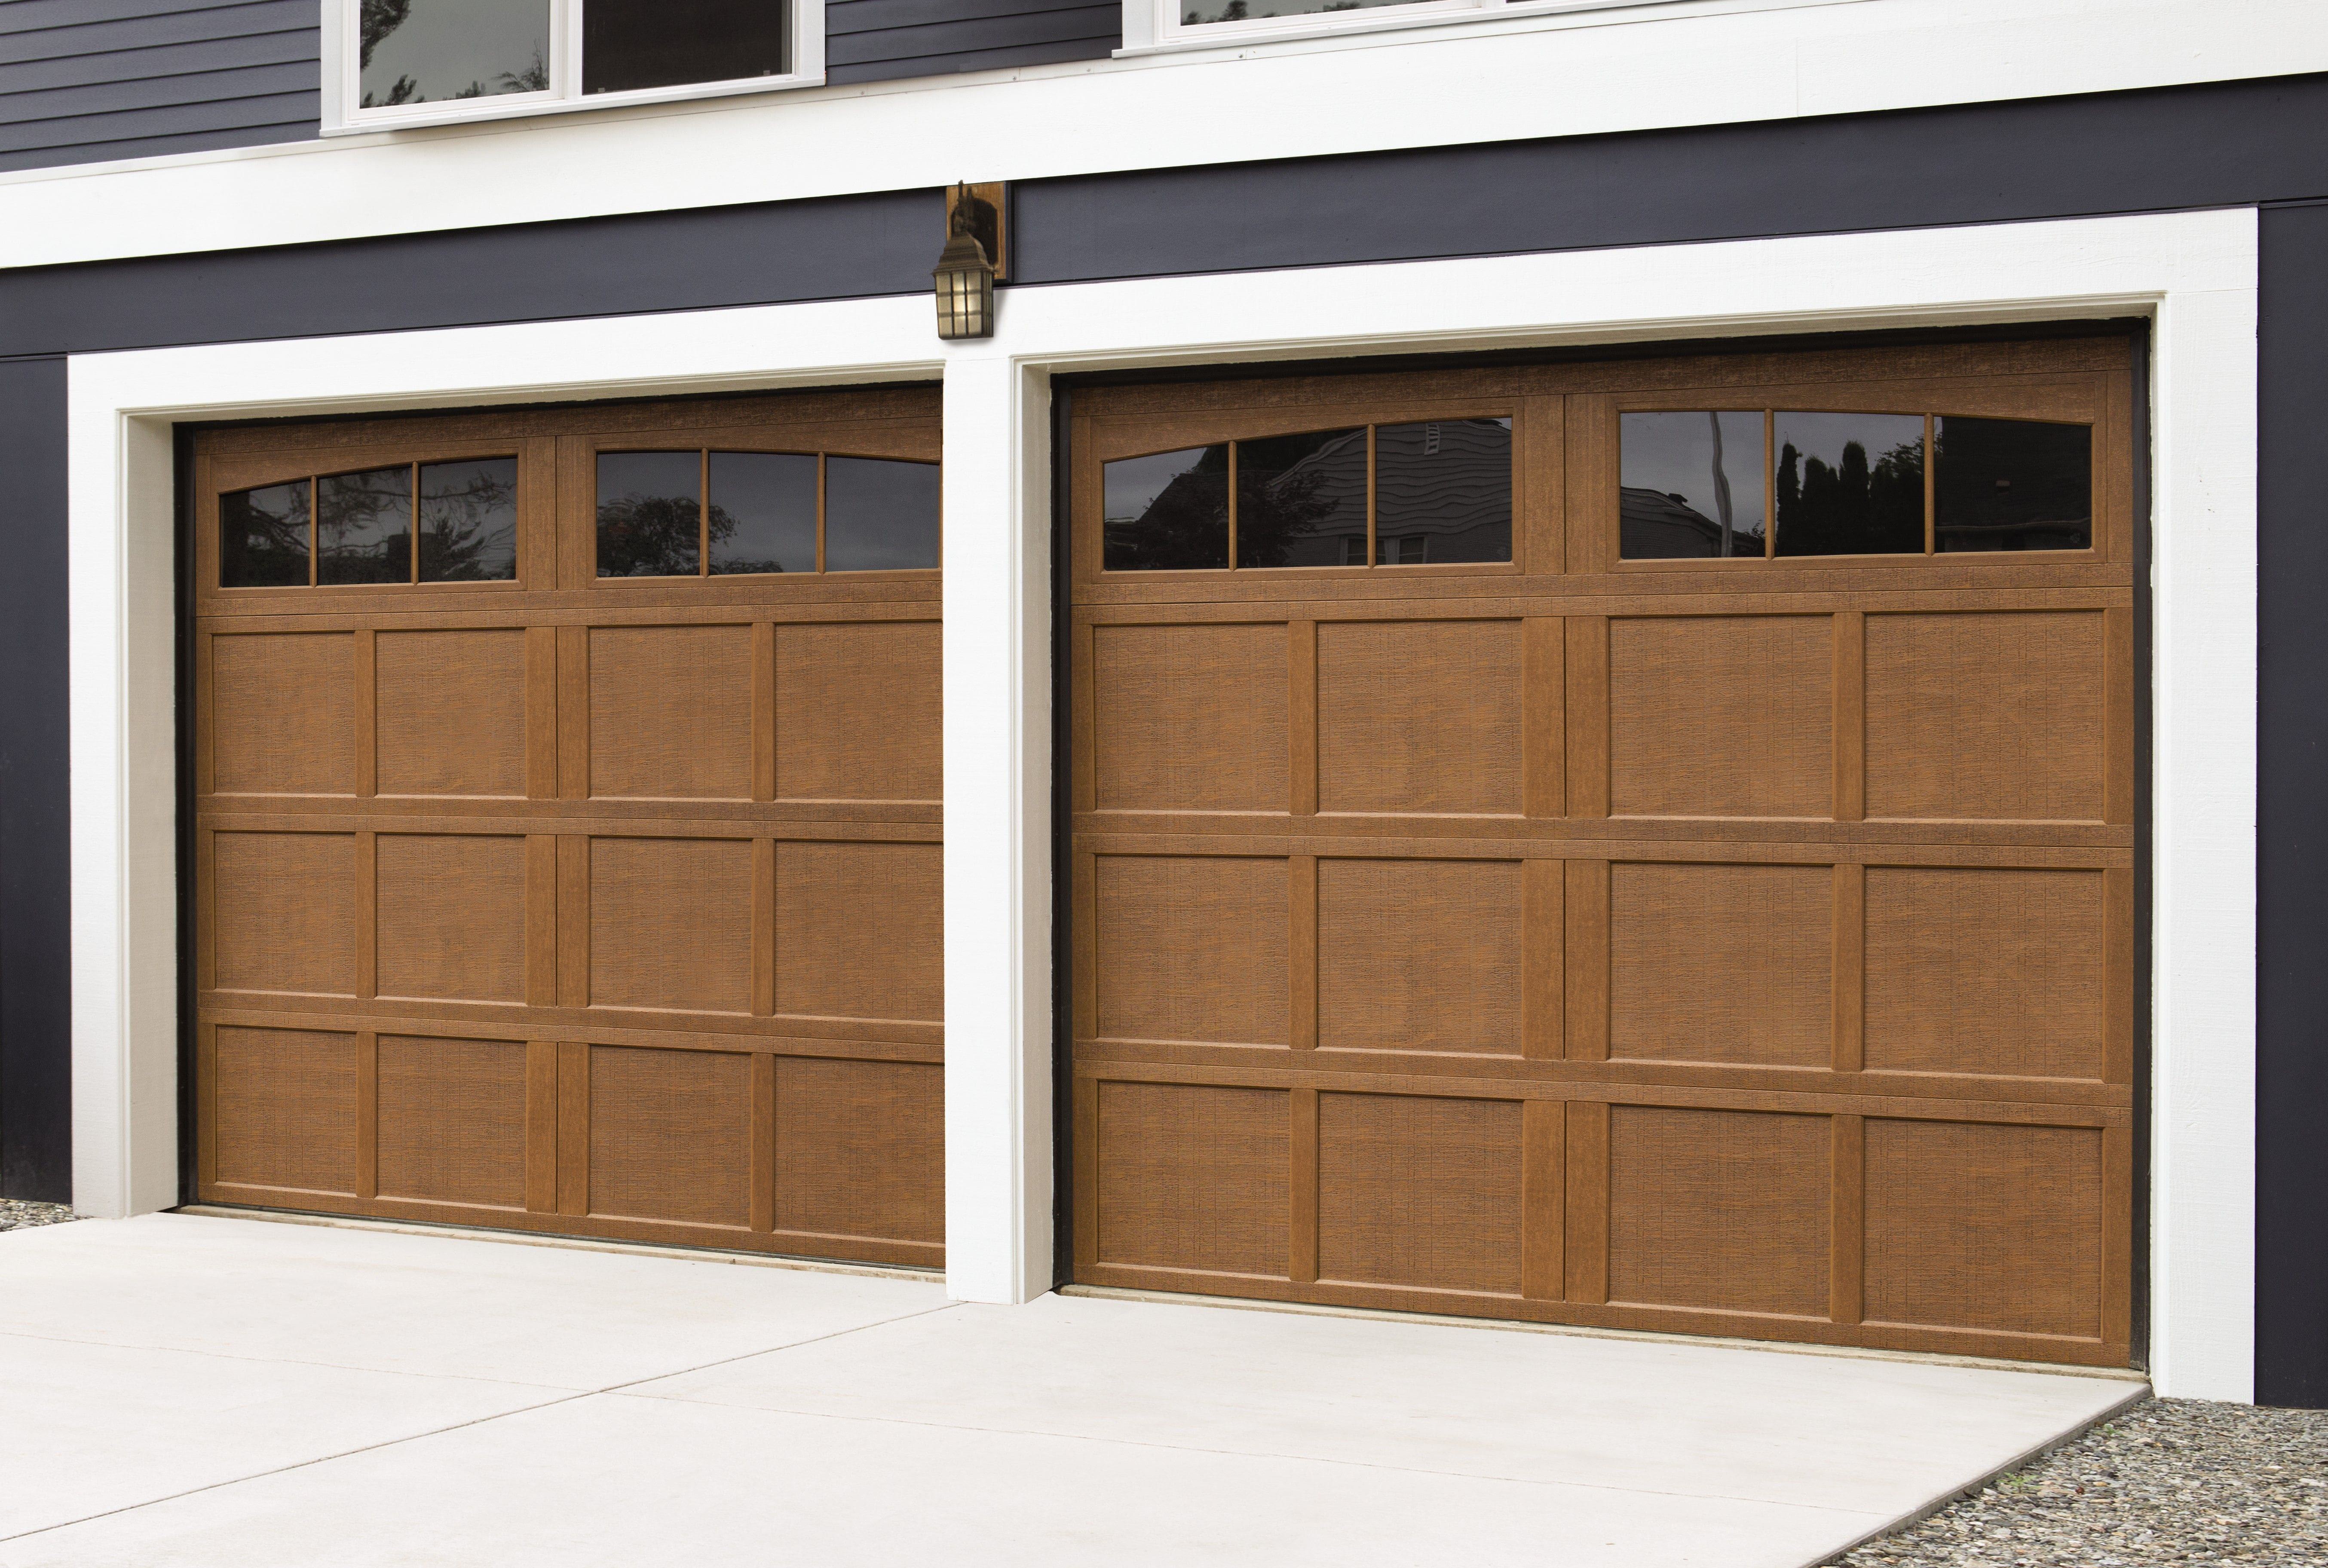 brand new wayne dalton garage doors in natural oak